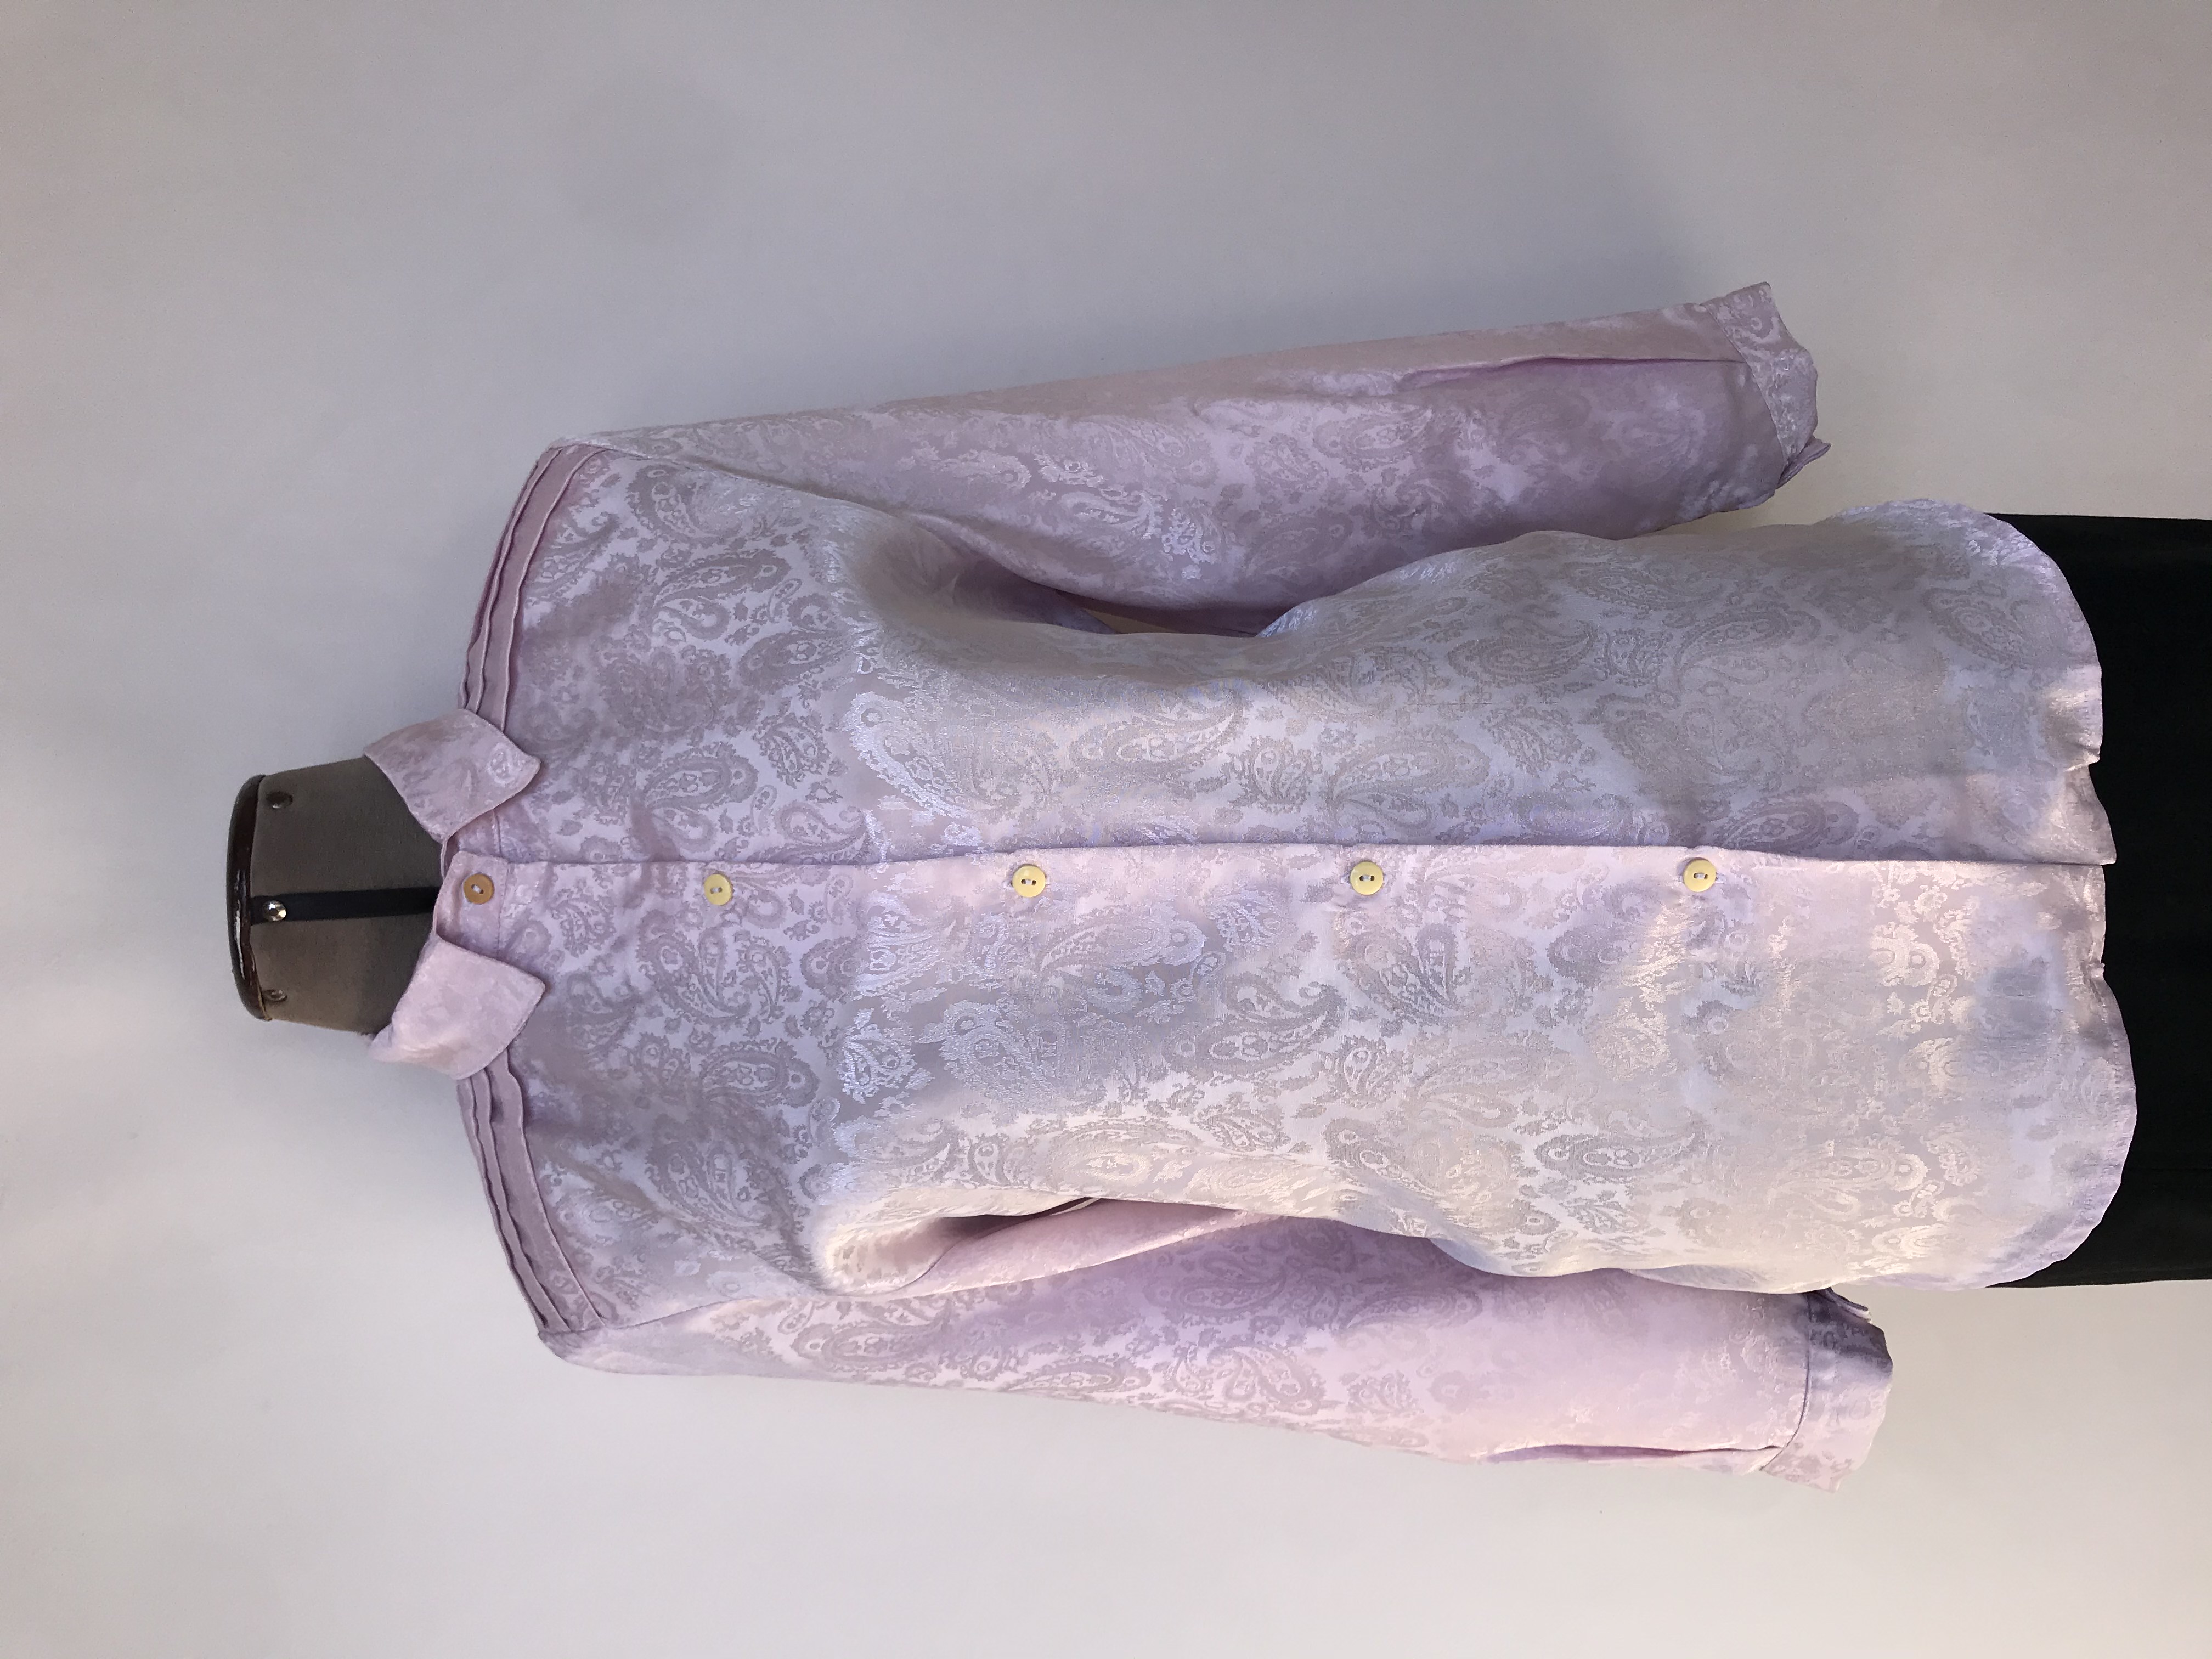 Blusa vintage rosada con brocado paisley al tono, oversized, botones en el centro, pliegues en hombros y espalda
Talla M